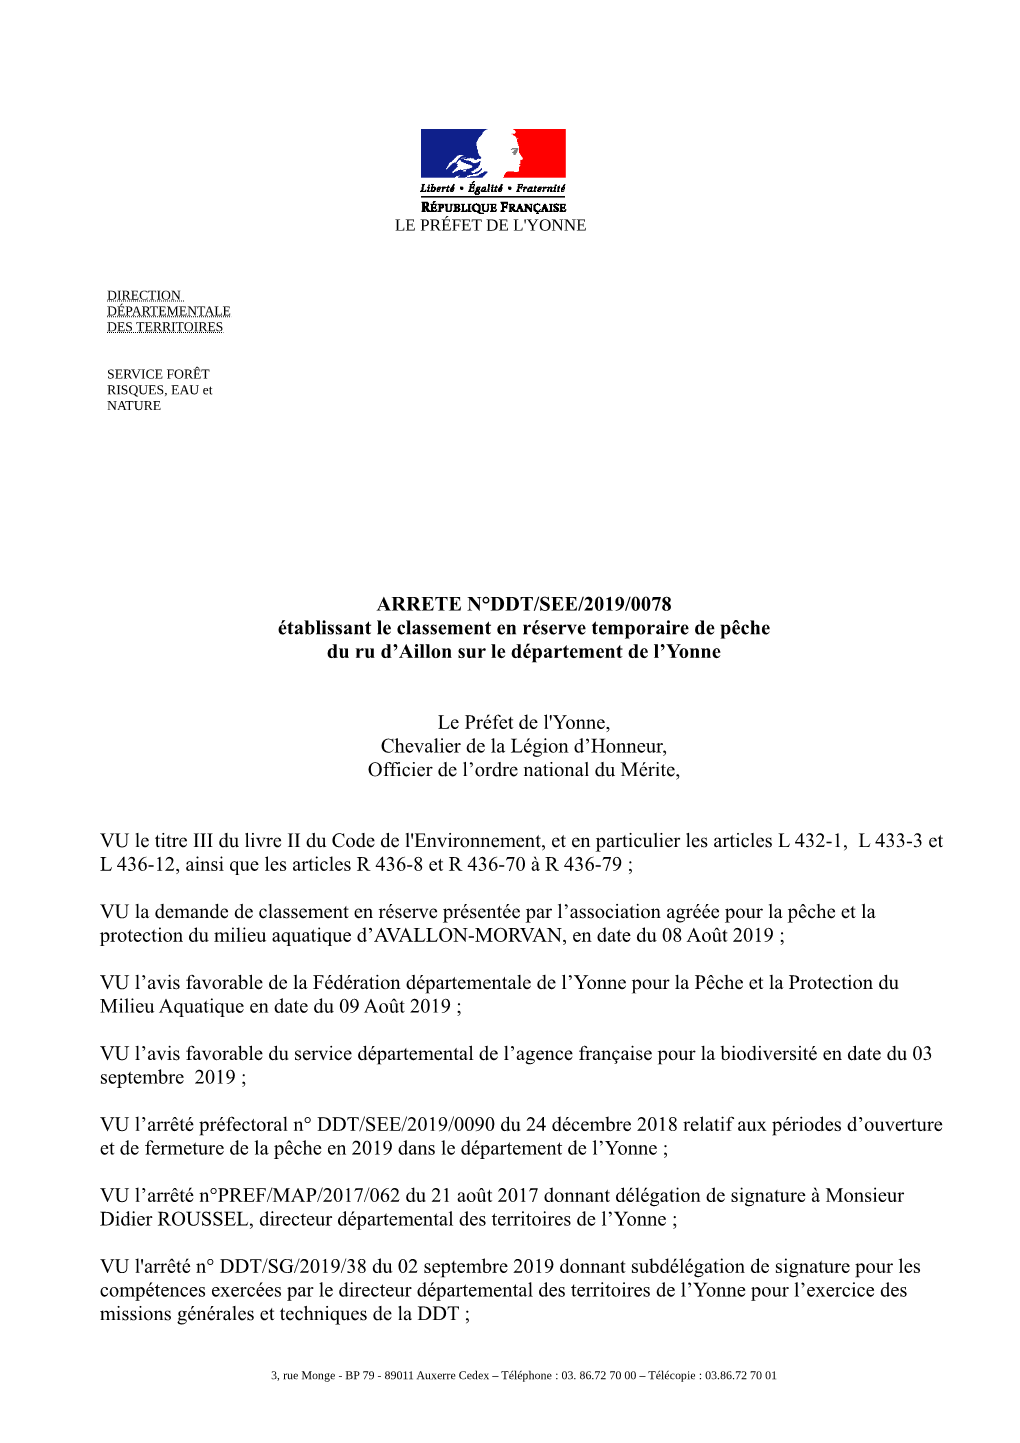 ARRETE N°DDT/SEE/2019/0078 Établissant Le Classement En Réserve Temporaire De Pêche Du Ru D’Aillon Sur Le Département De L’Yonne